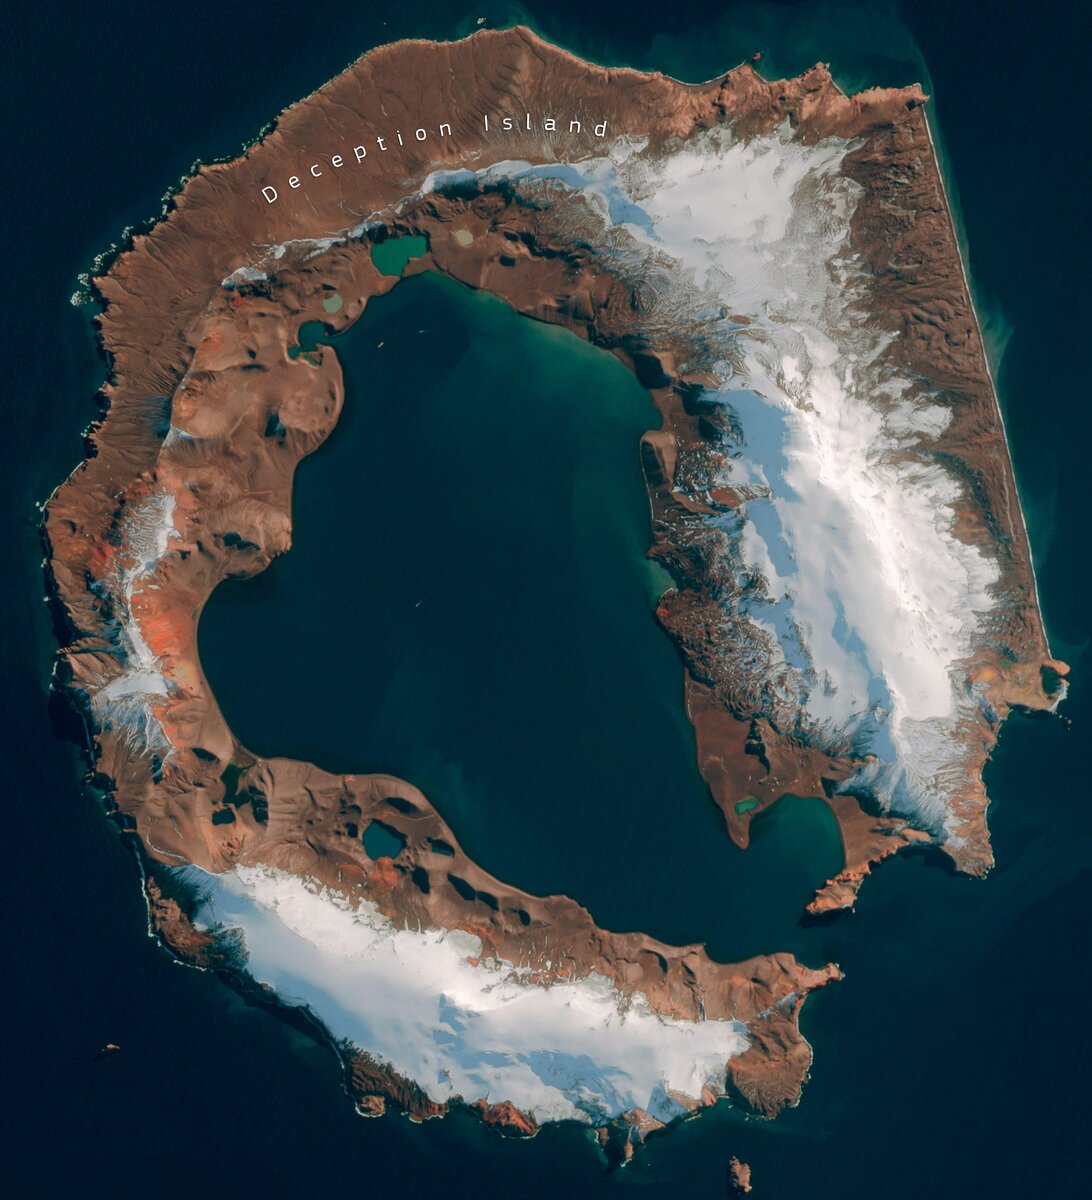 Σχεδόν κανείς δεν γνωρίζει ότι η Έκτη Ήπειρος είναι η μεγαλύτερη ηφαιστειακή περιοχή στον πλανήτη. Μόνο στη Δυτική Ανταρκτική, κρυμμένα κάτω από το πάχος του πάγου... 138 ηφαίστεια!